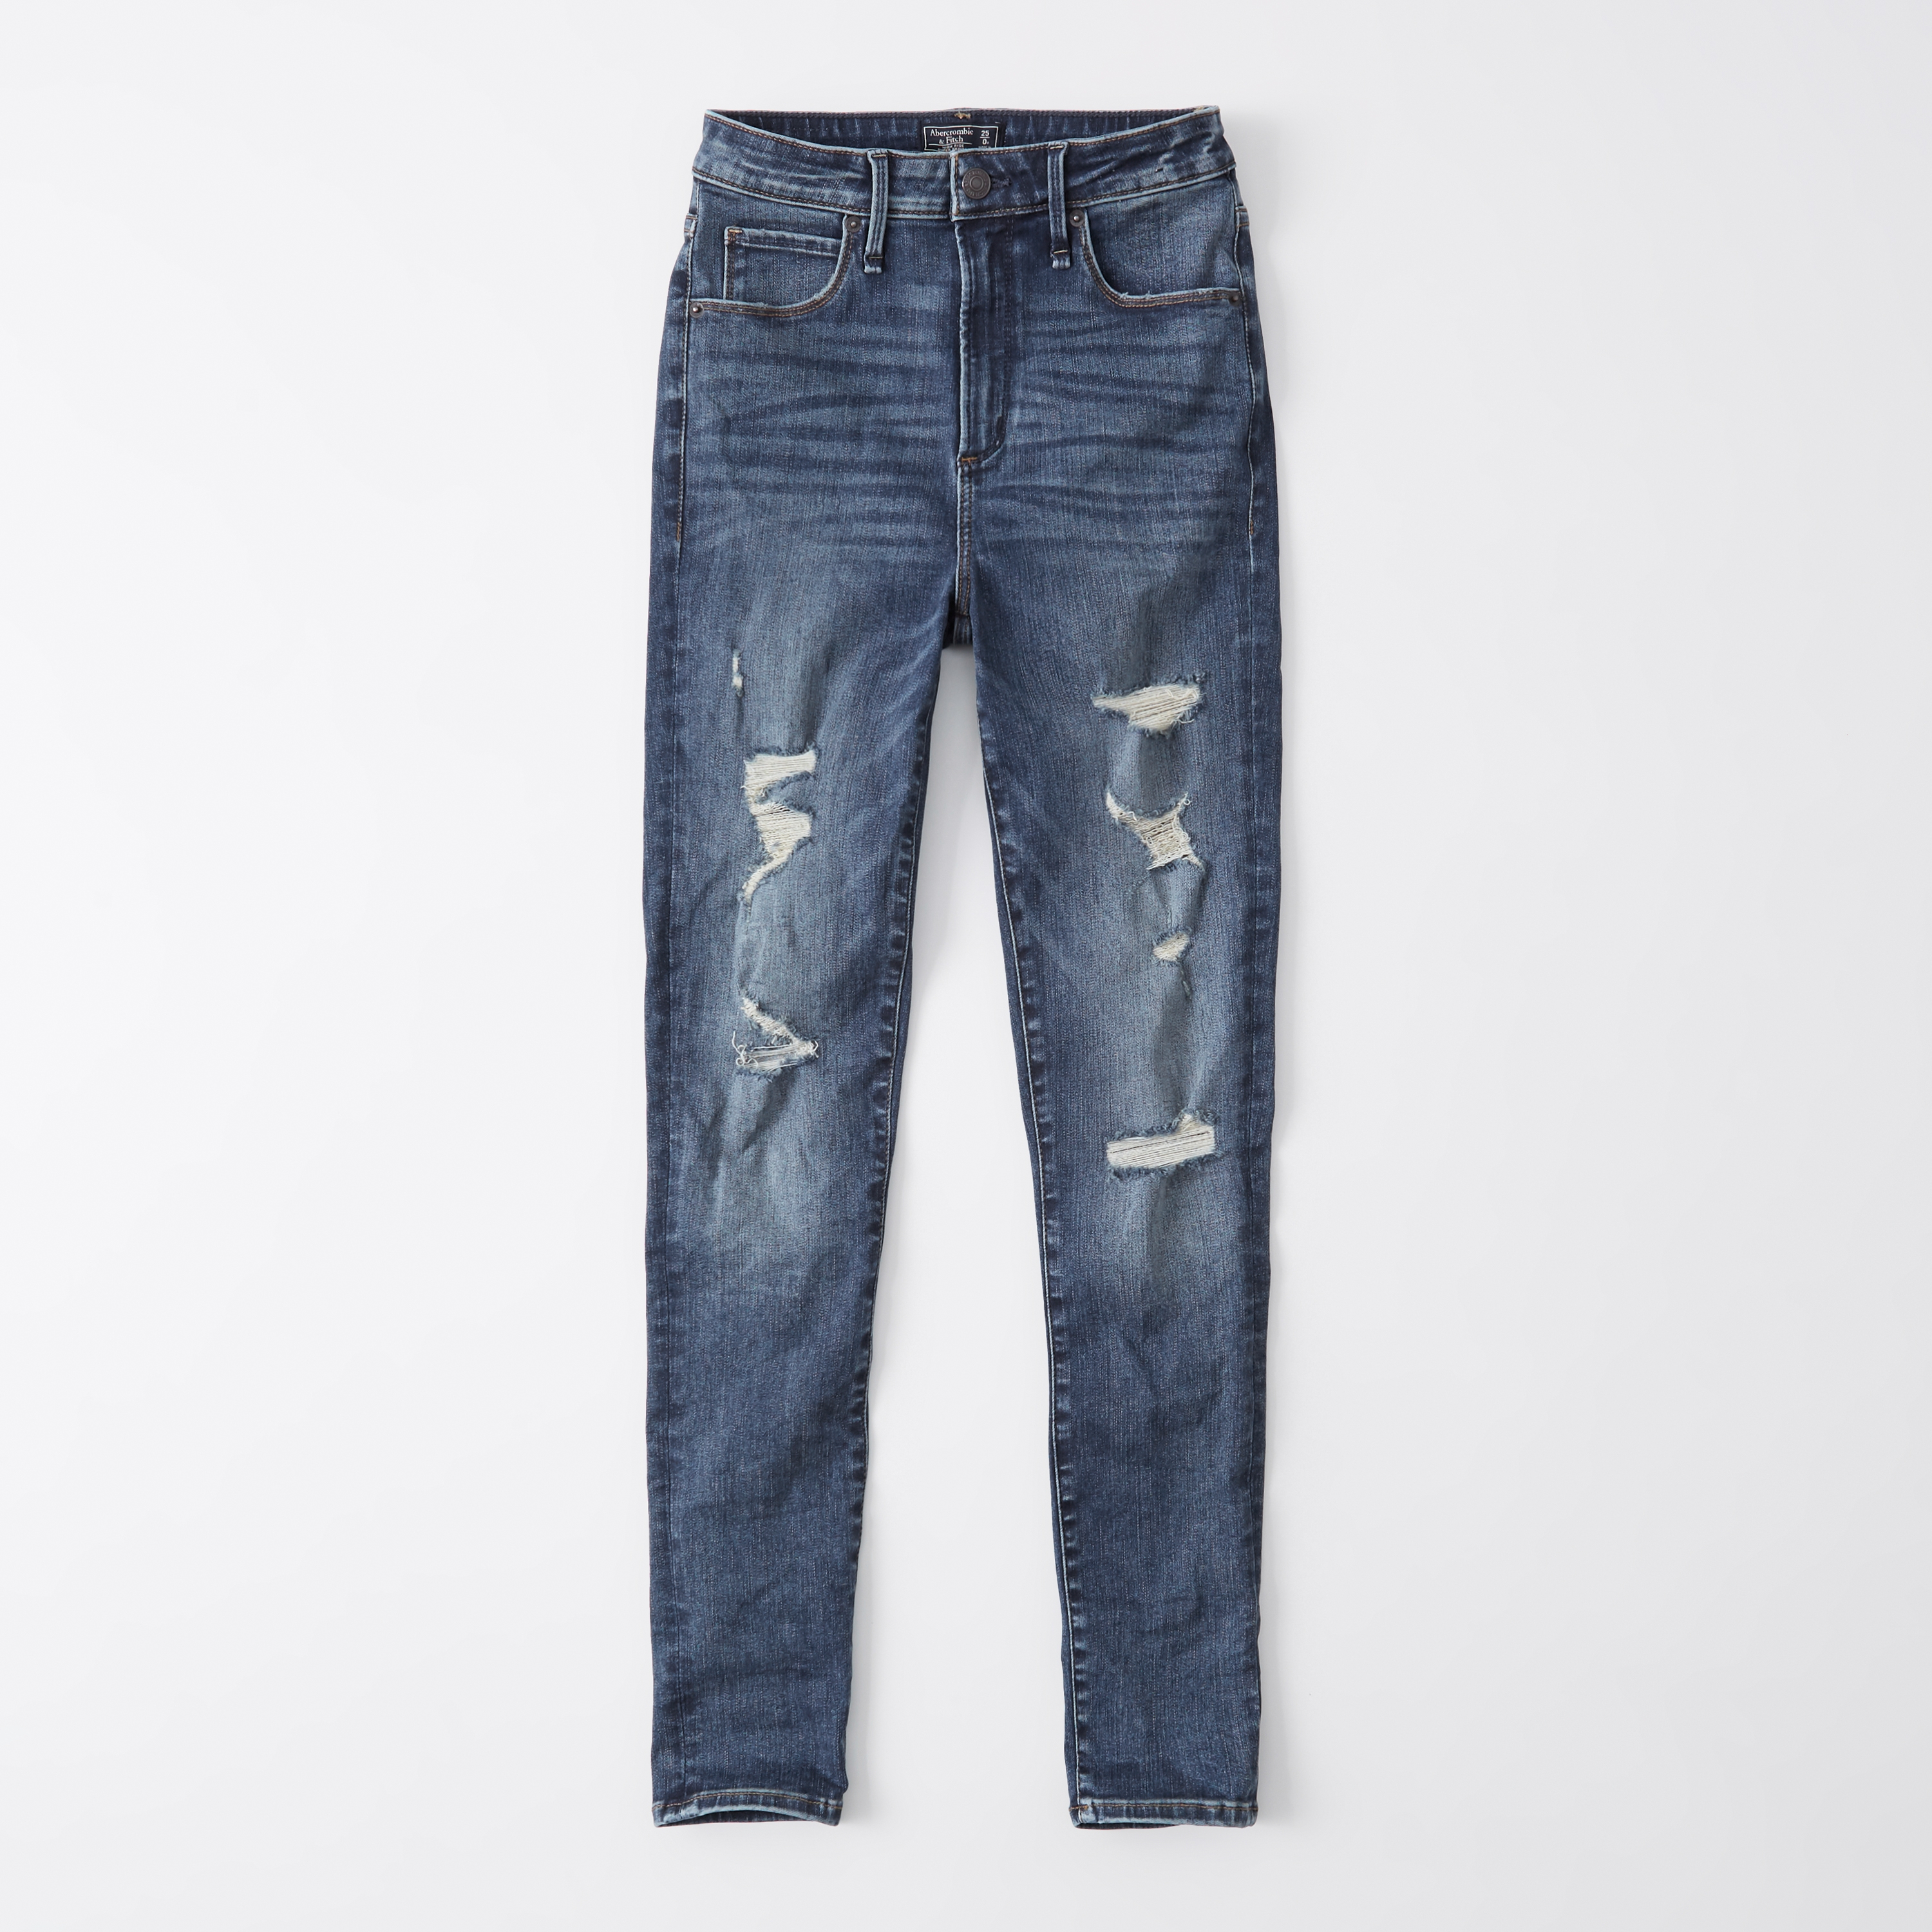 abercrombie jeans price